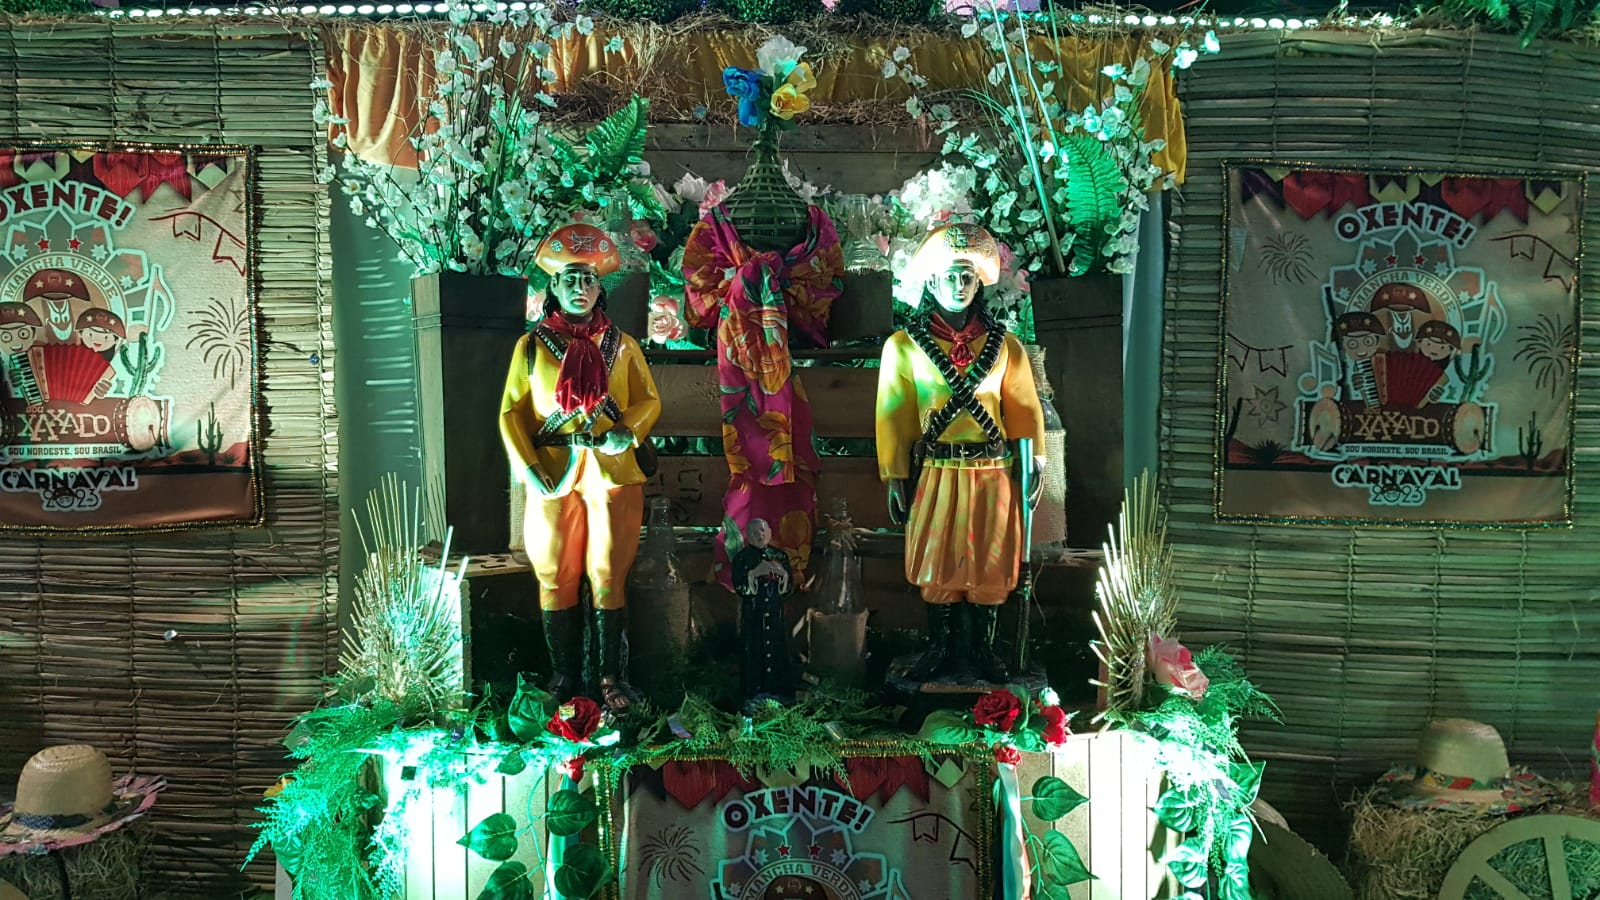 Final de samba-enredo da Mancha Verde para o Carnaval 2023. Foto: Guilherme Queiroz